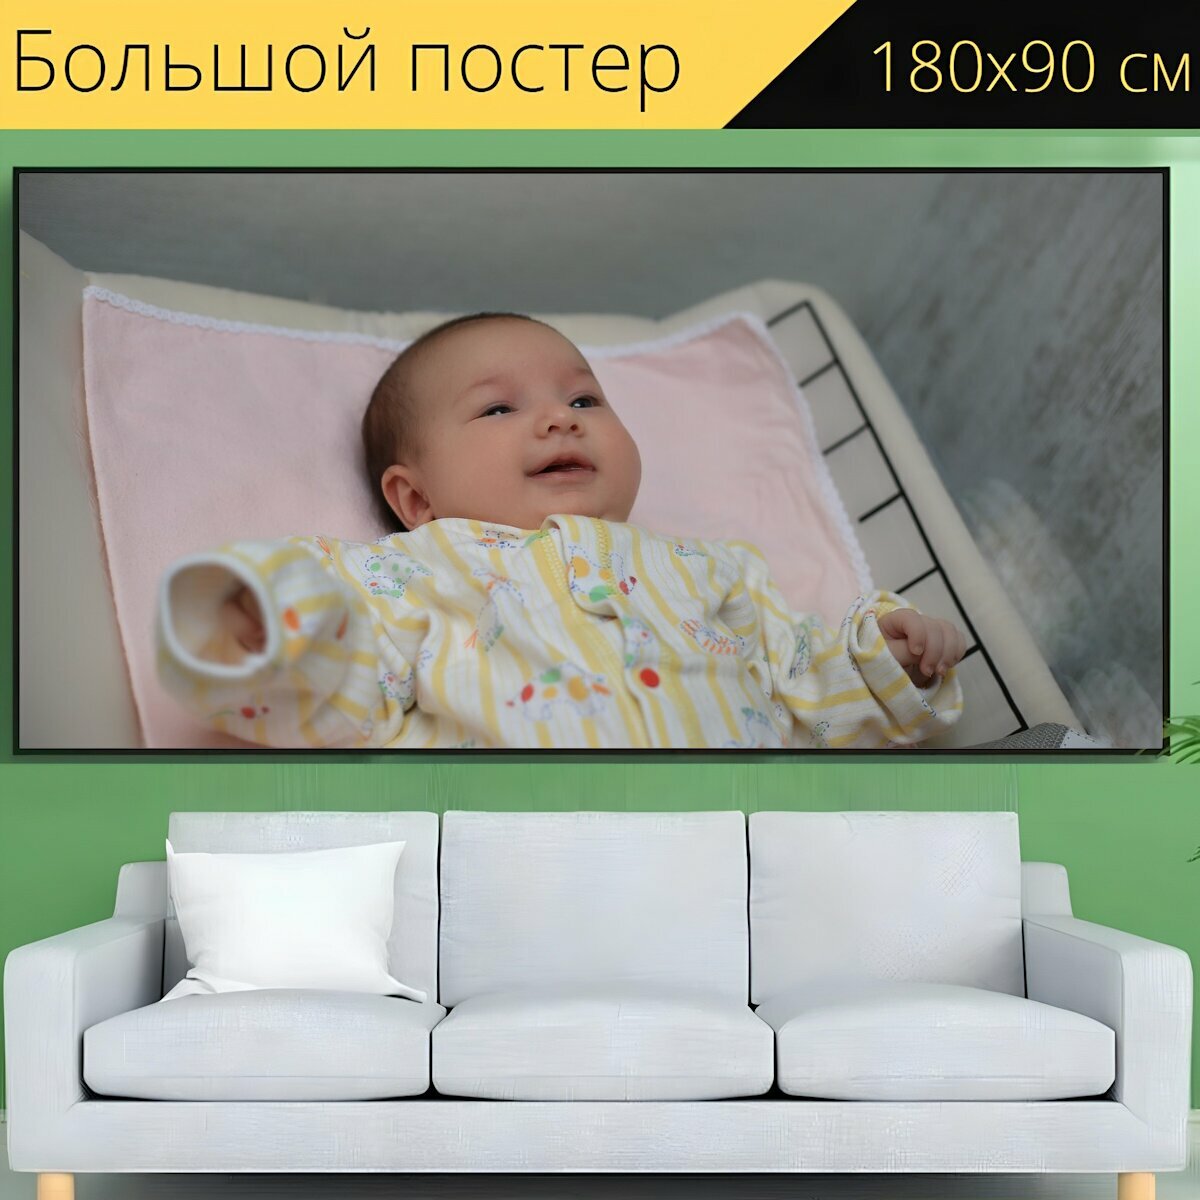 Большой постер "Детка, новорожденный, ребенок" 180 x 90 см. для интерьера